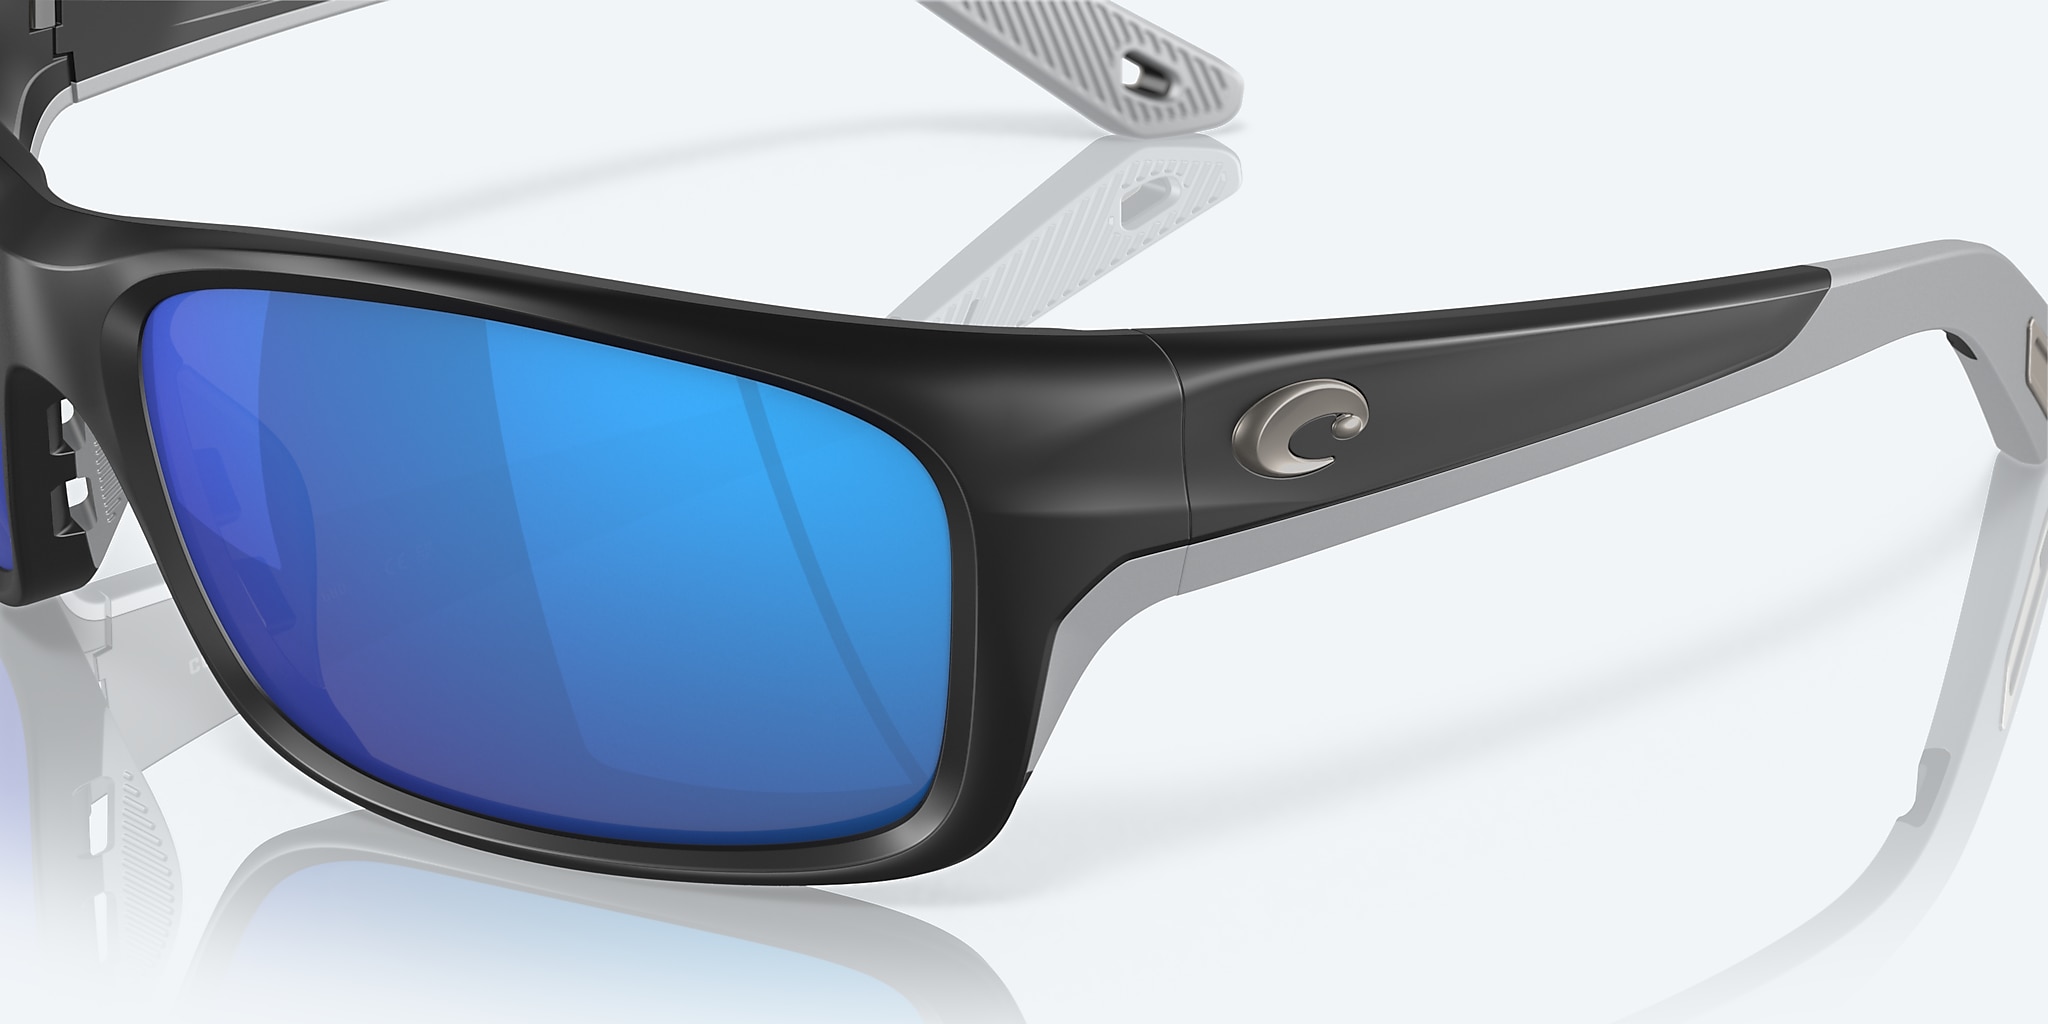 Costa Jose Pro Sunglasses Matte Black / Blue Mirror / 580G